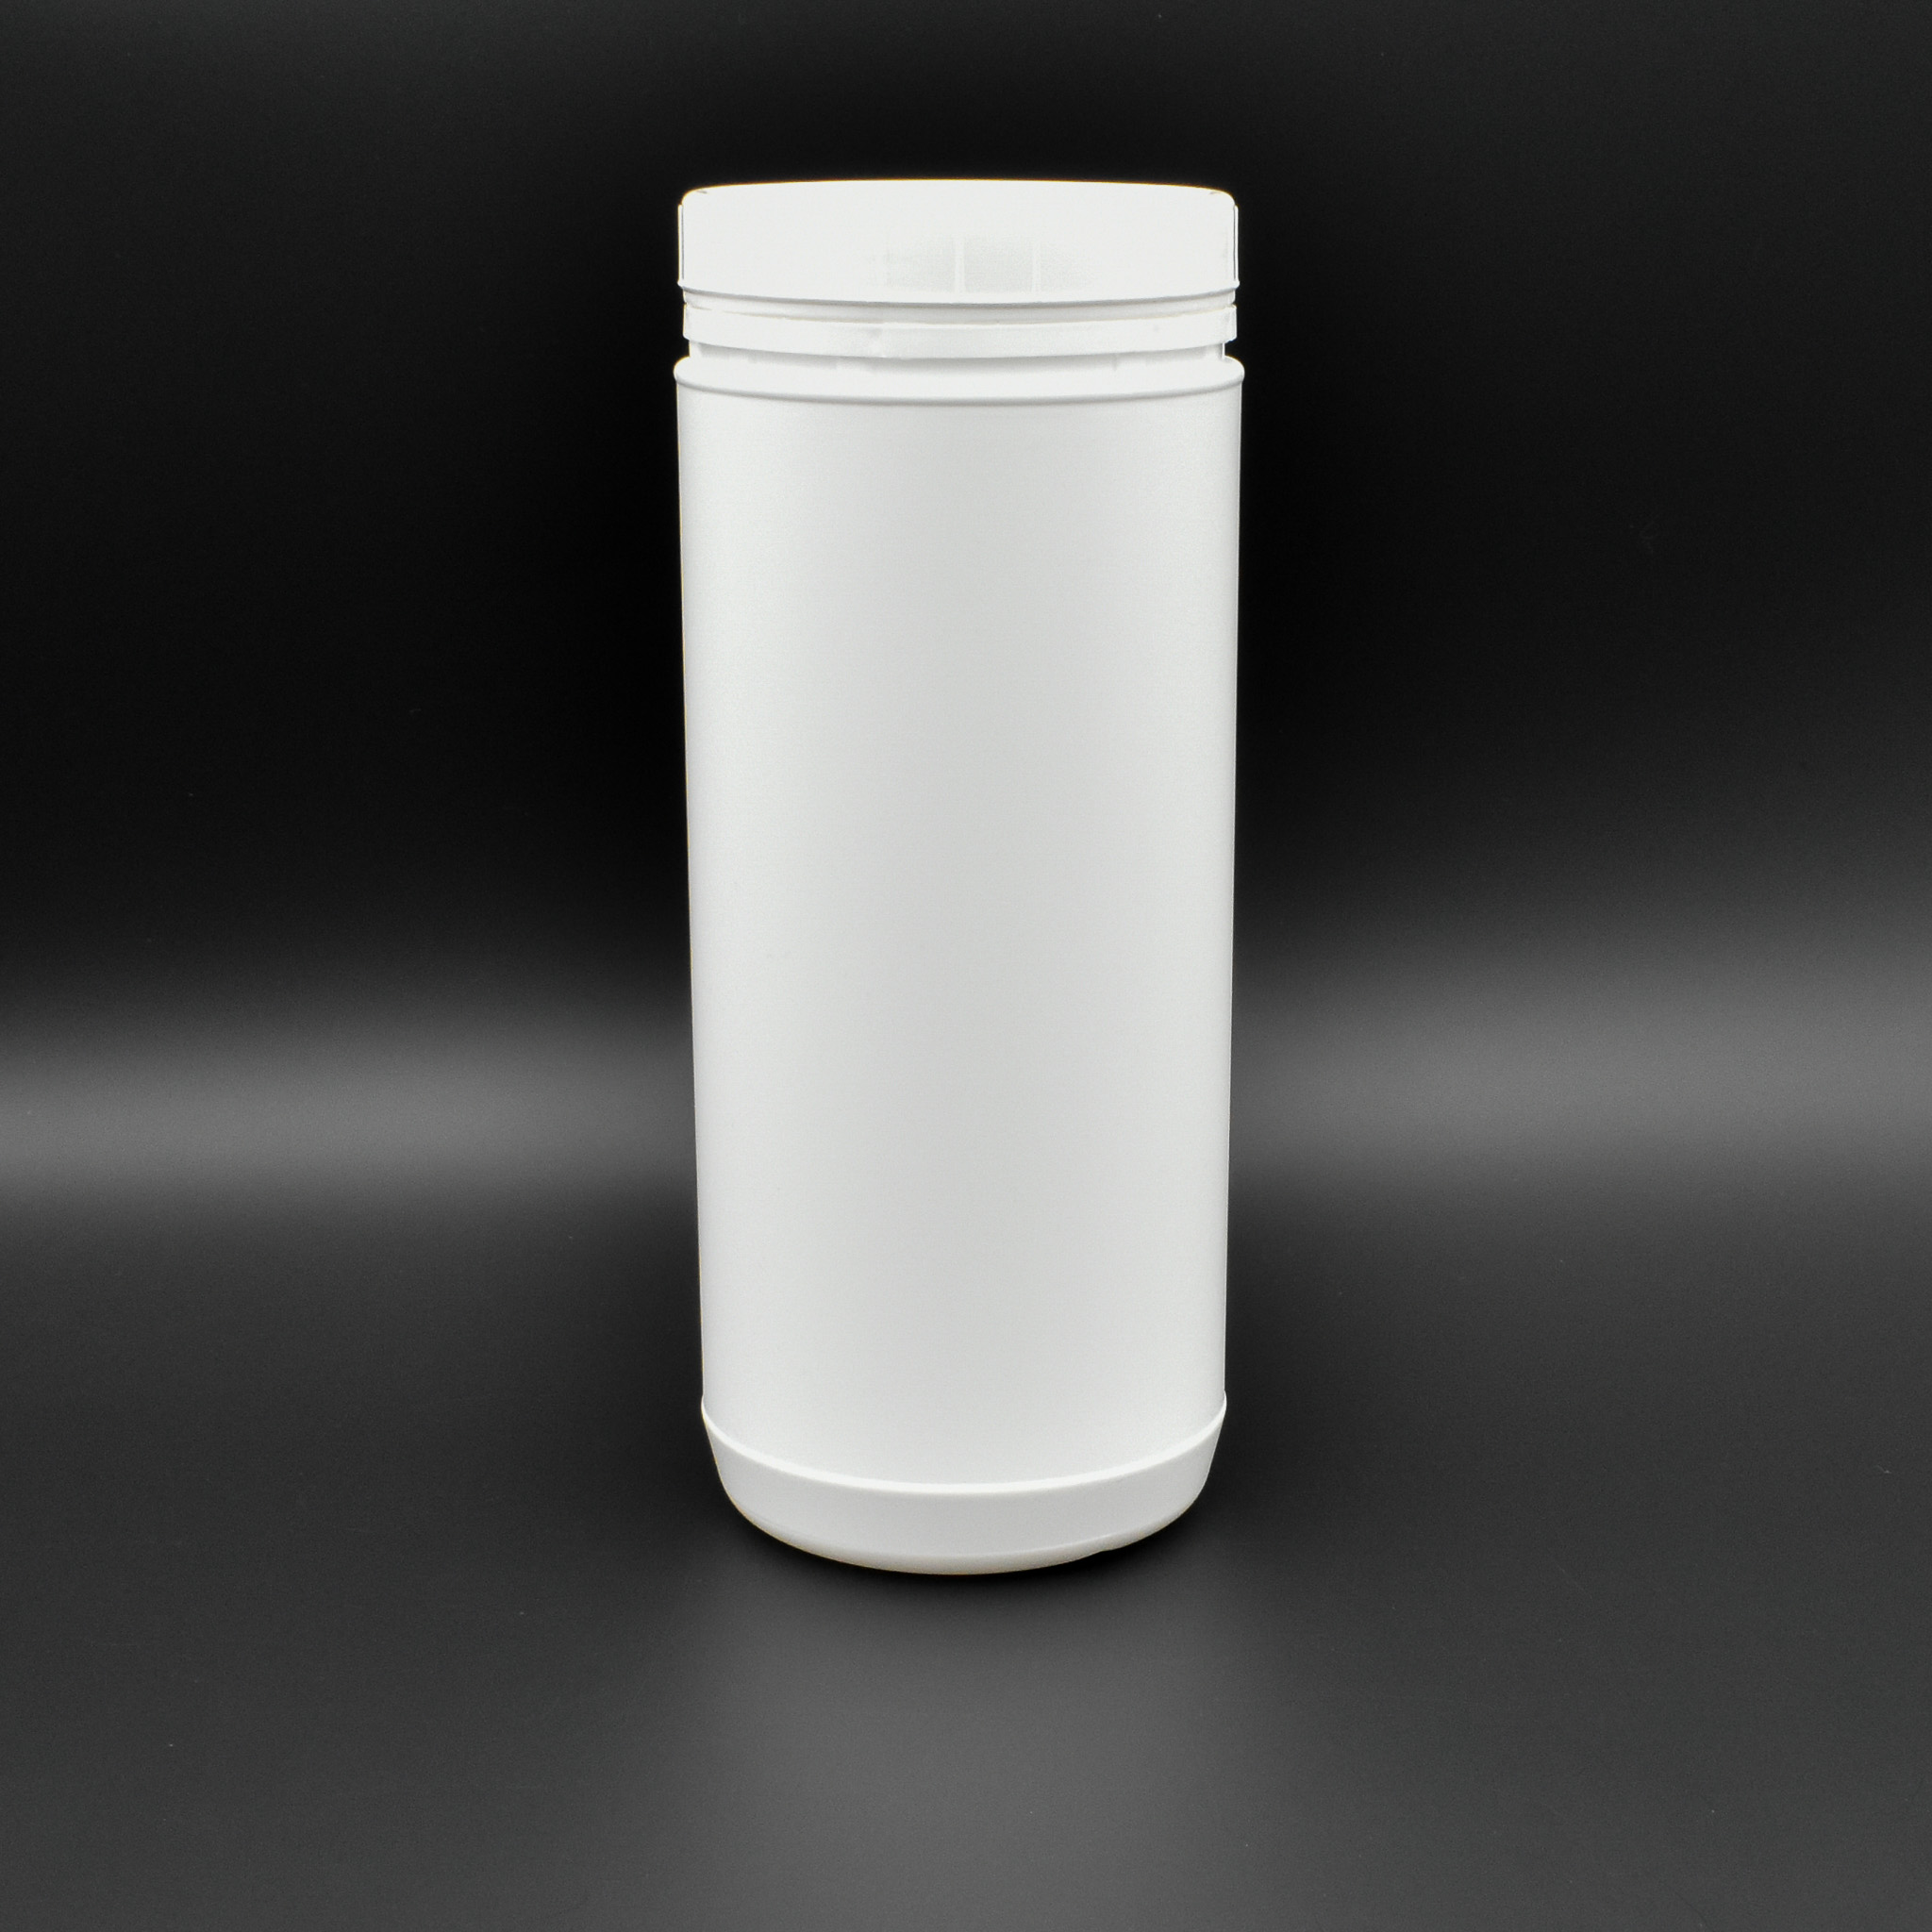 Pot-plastique-1500ml-pehd-16278-nettoyer-la-maison